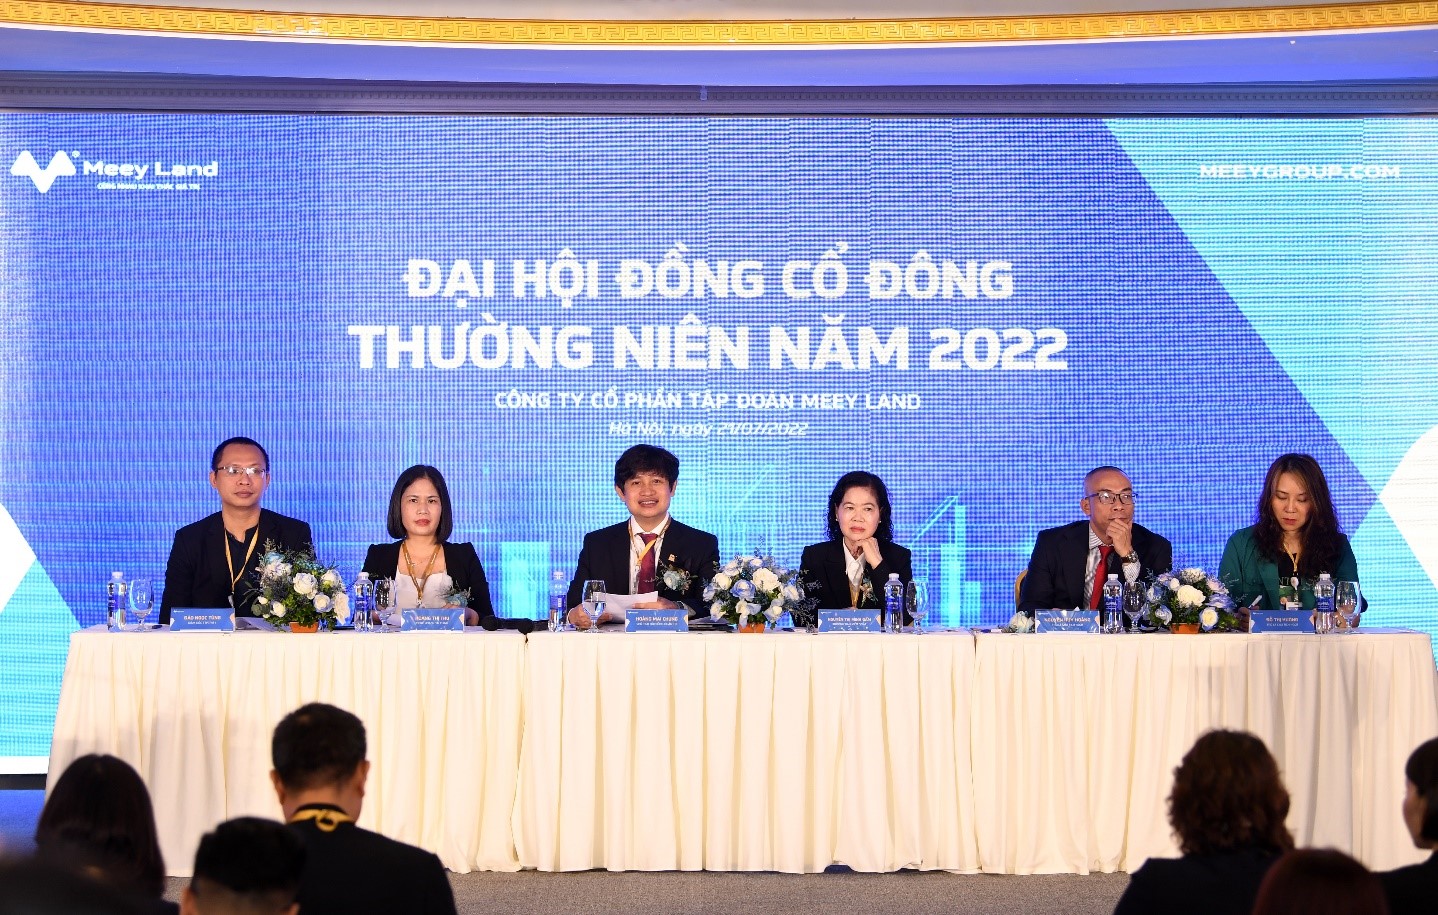 Đại hội đồng cổ đông thường niên năm 2022 của Công ty cổ phần Tập đoàn Meey Land đã diễn ra vào sáng ngày 21/7/2022. Thông qua kế hoạch kinh doanh năm tài chính 2022